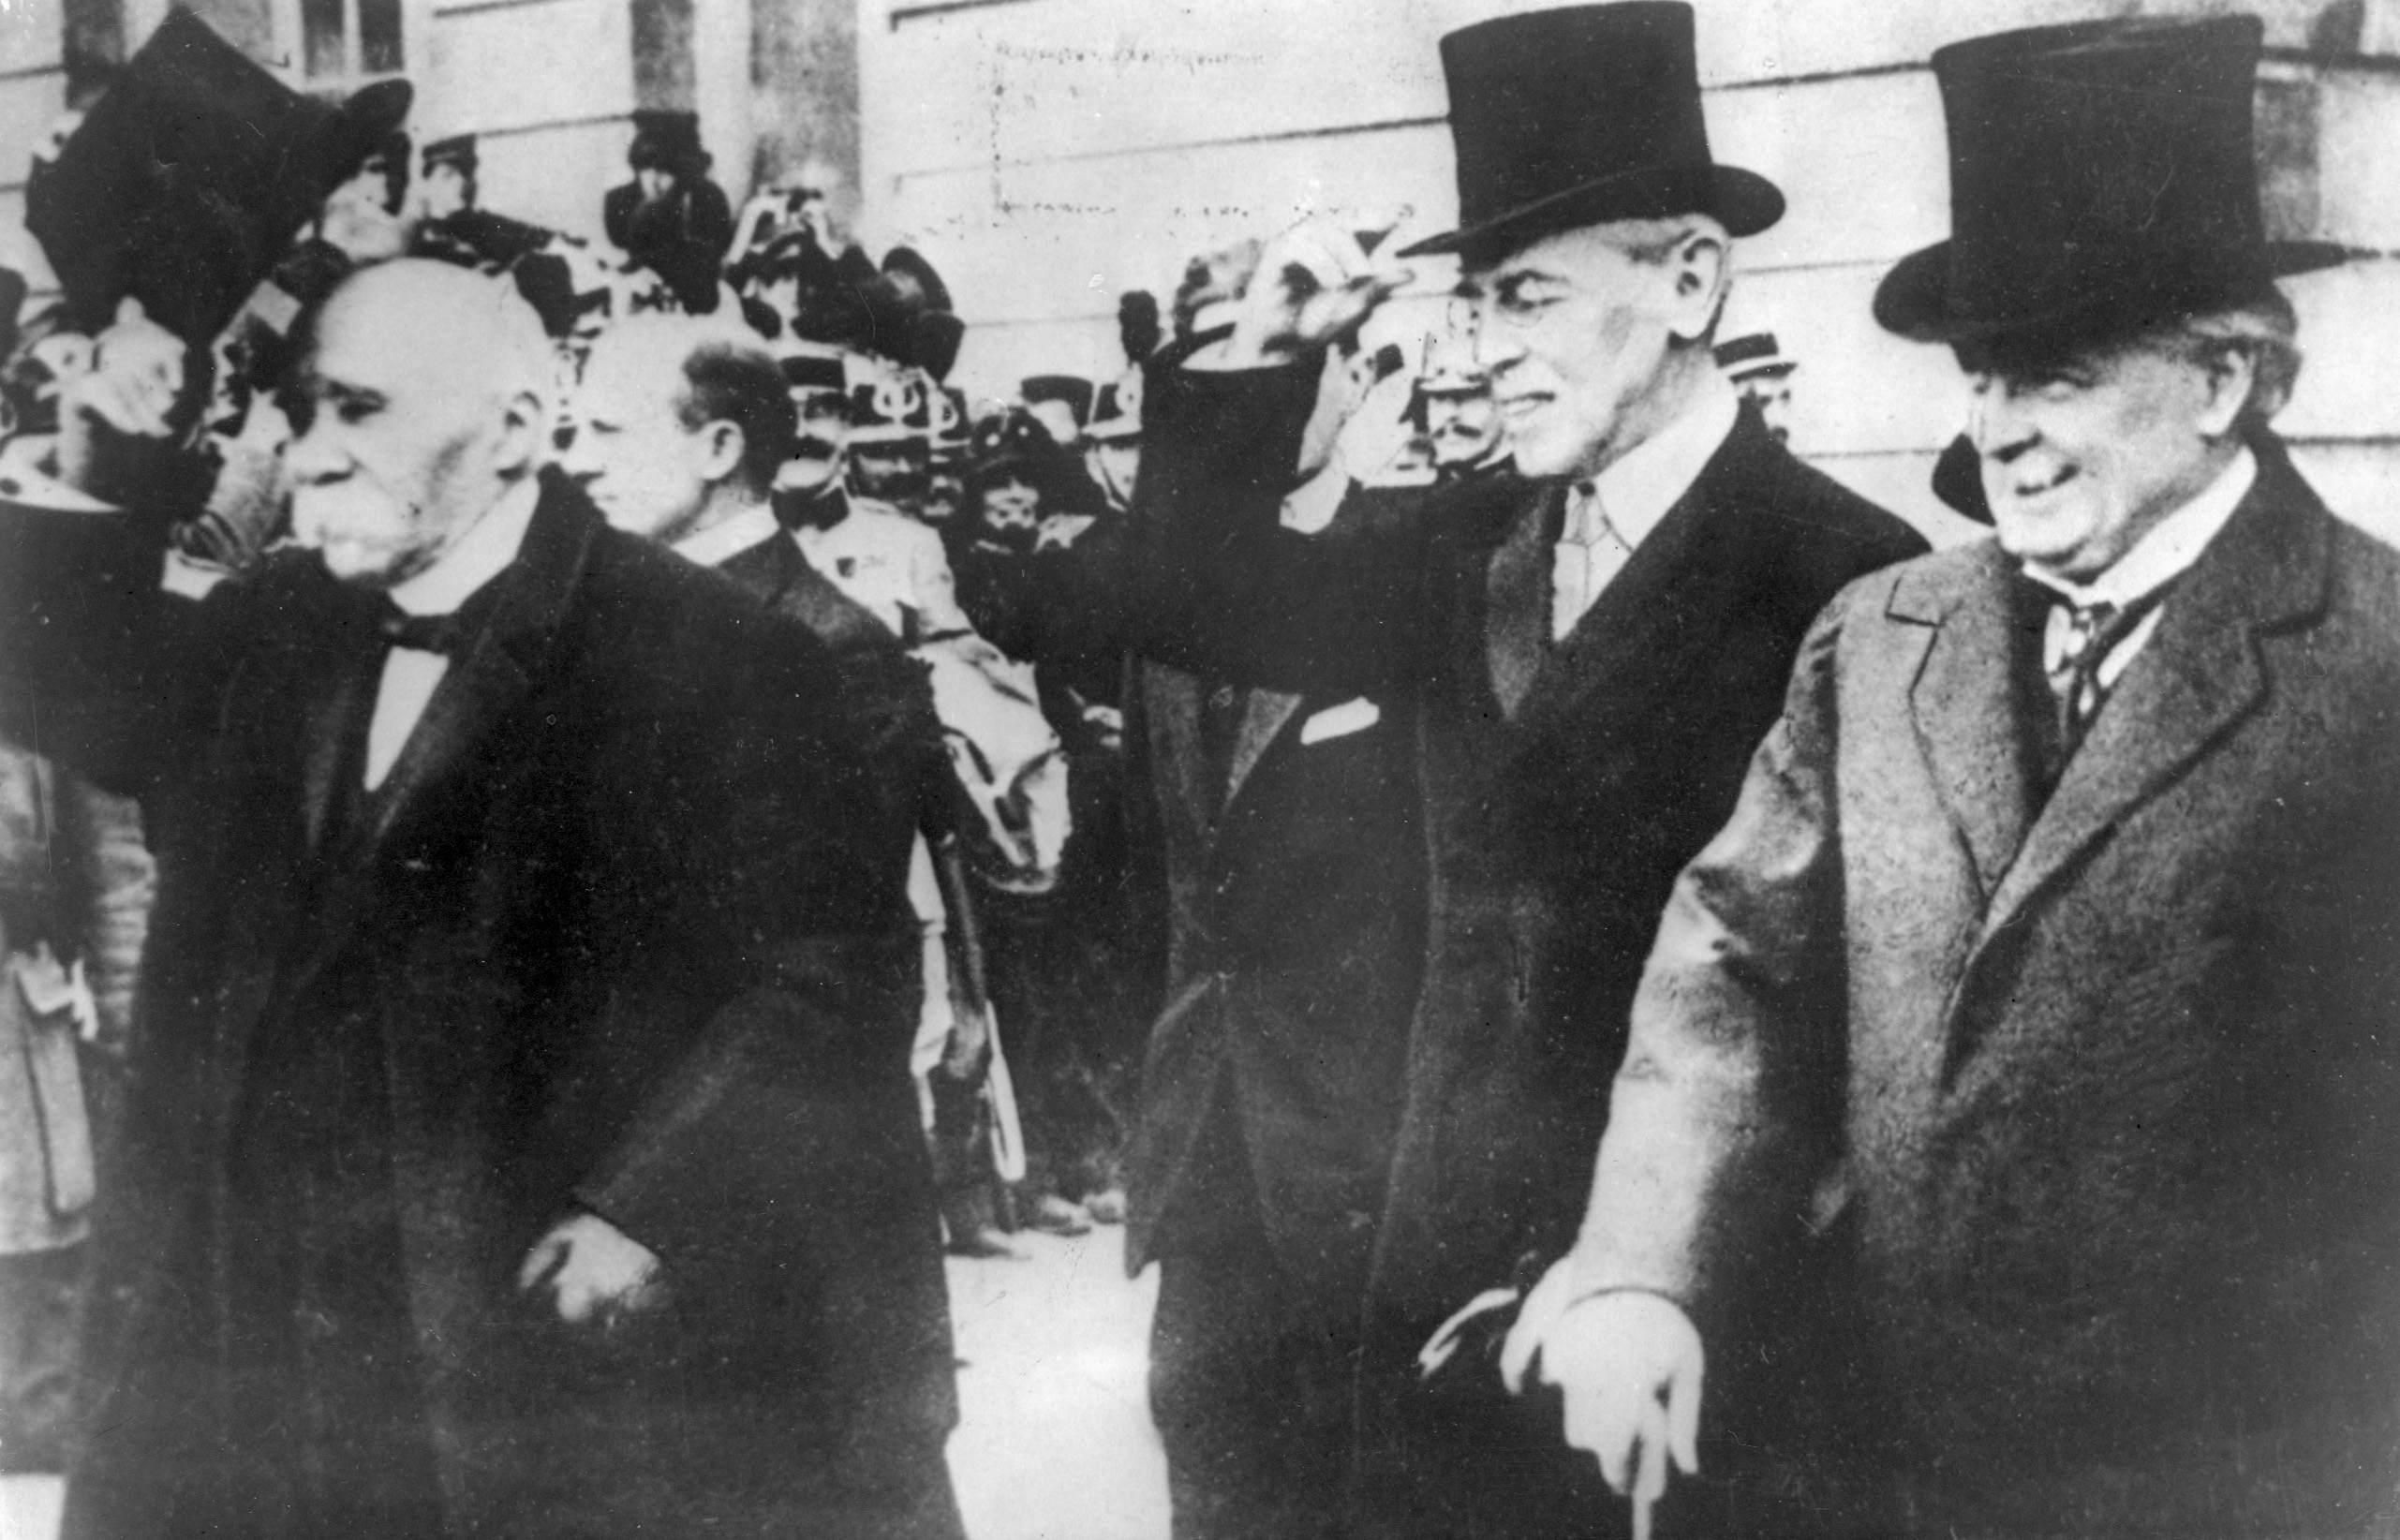 Franske regeringschefen Georges Clemenceau, amerikanske presidenten Woodrow Wilson samt engelske premiärministern David Lloyd George ses här på väg ut från Versailles efter undertecknandet av fredsfördraget som avslutade Första världskriget. 